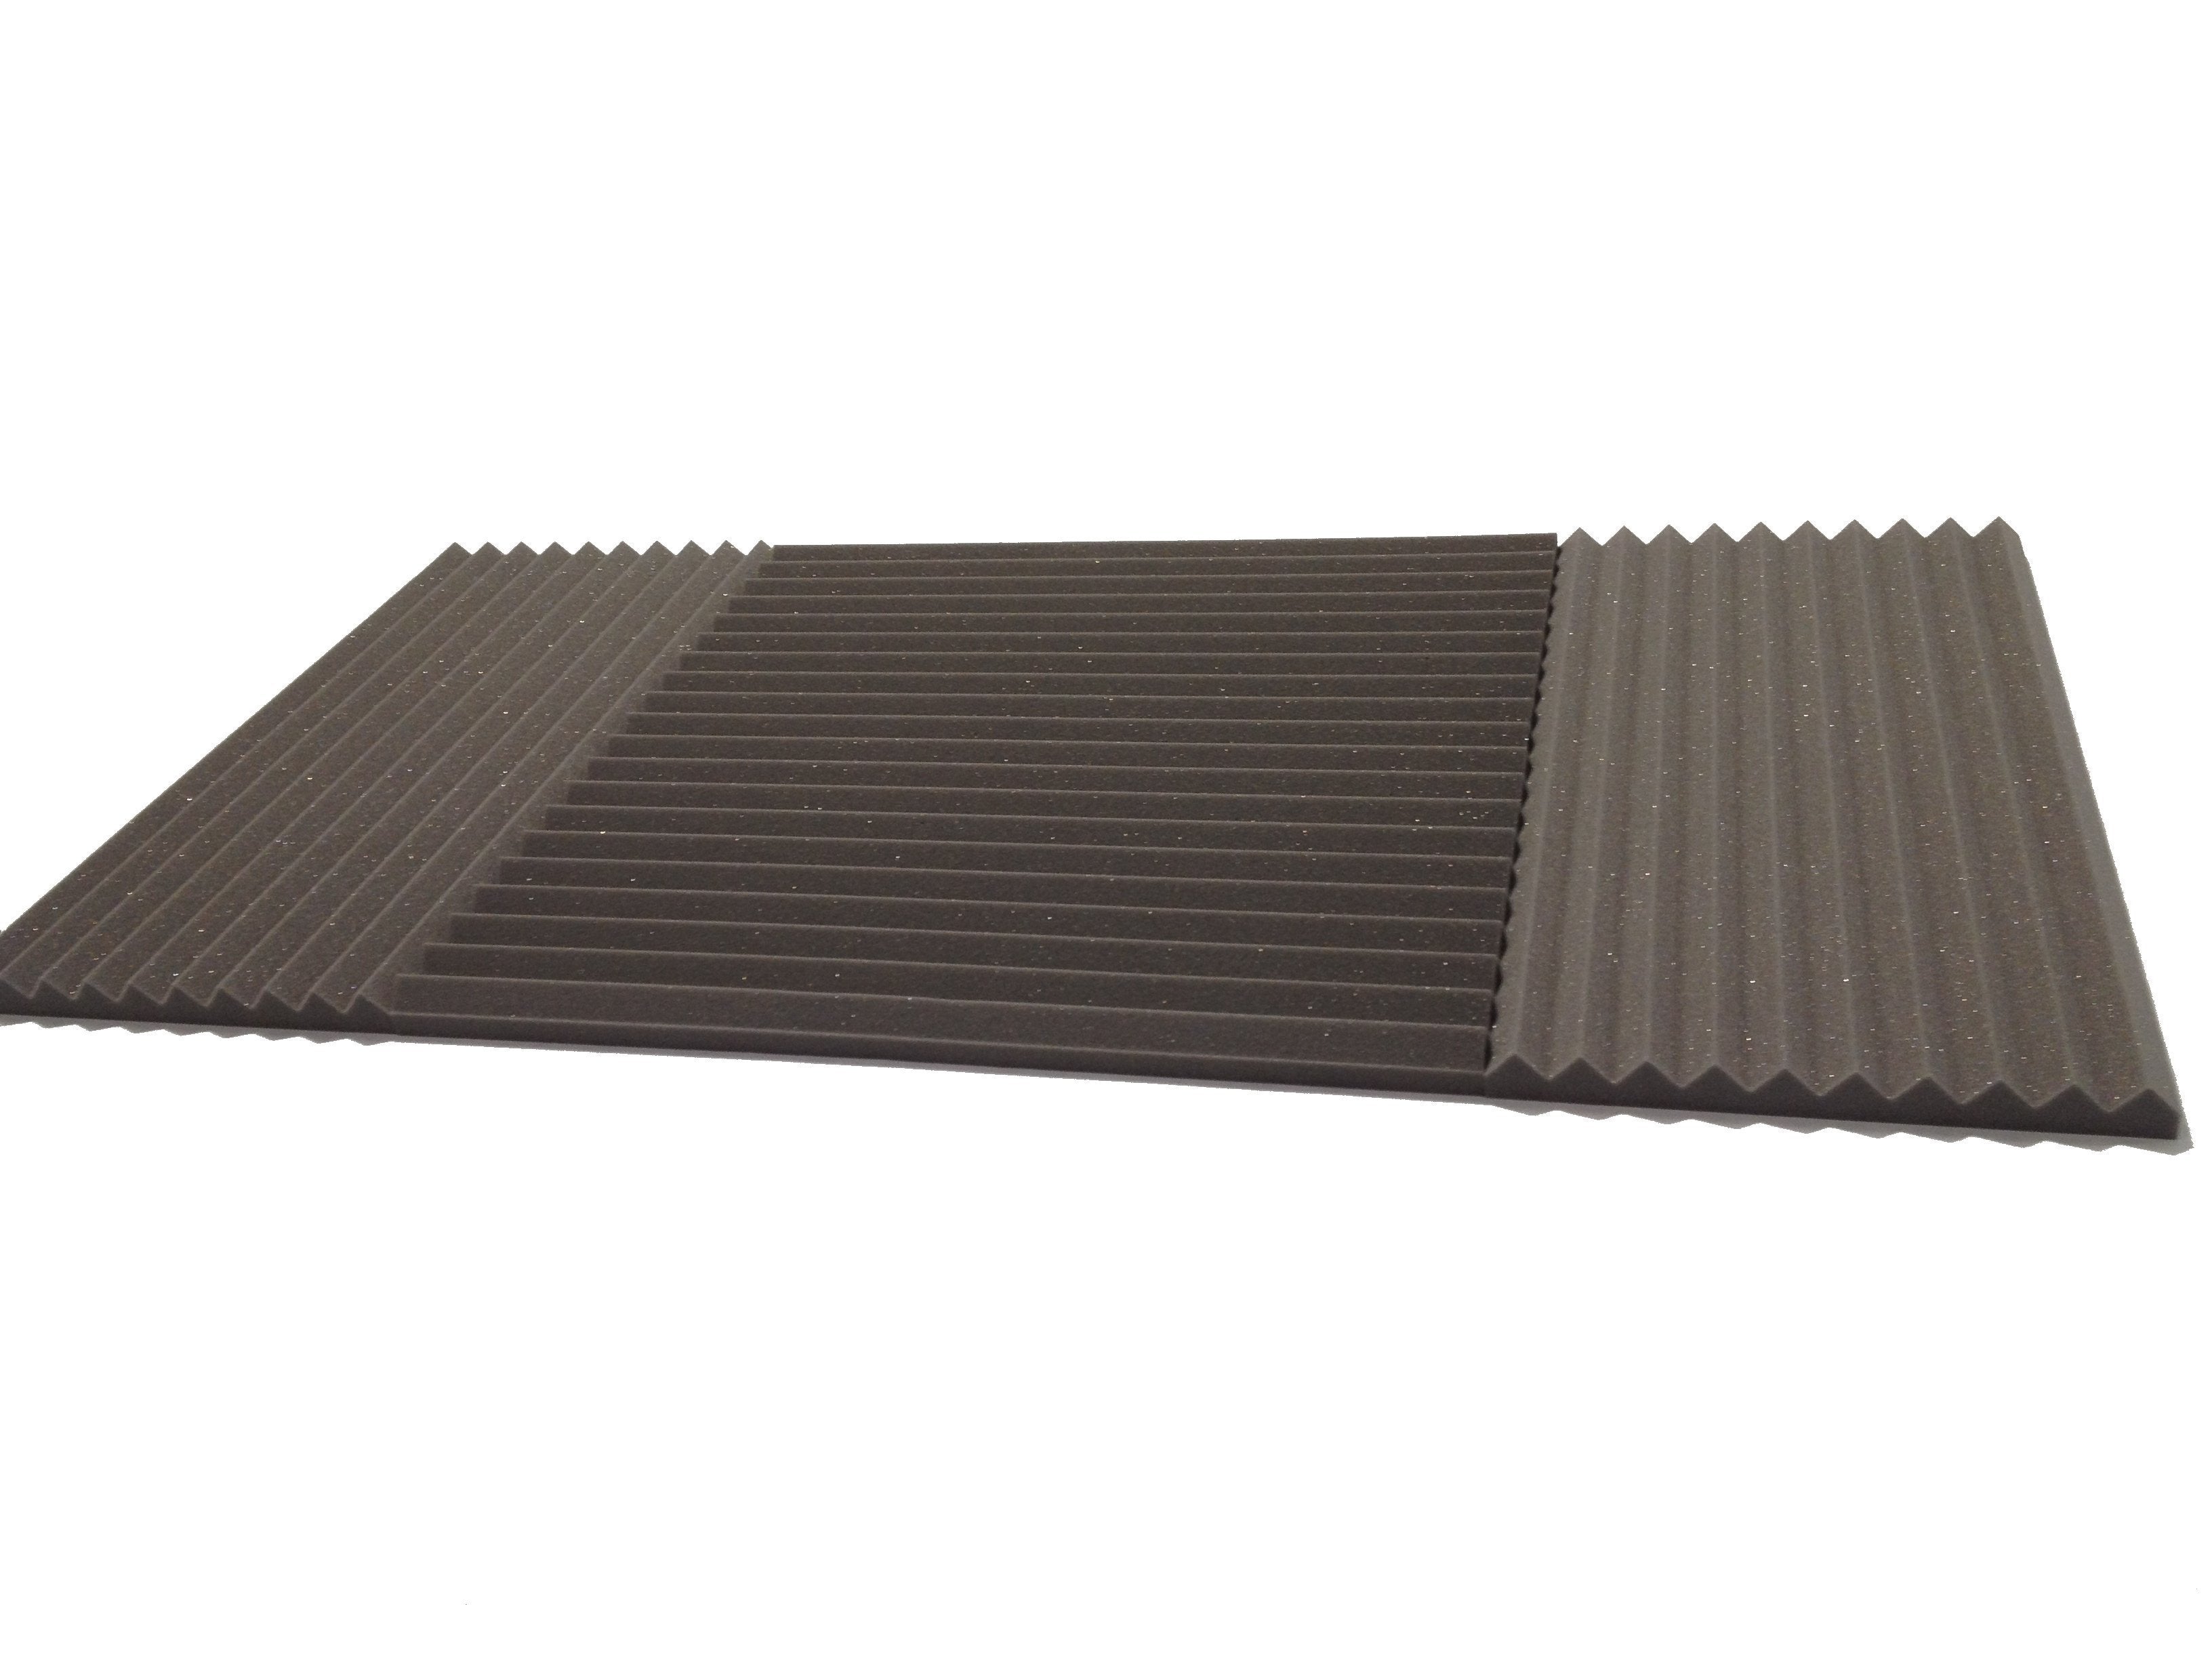 Wedge 30"x15" Acoustic Studio Foam Tile Kit - Advanced Acoustics